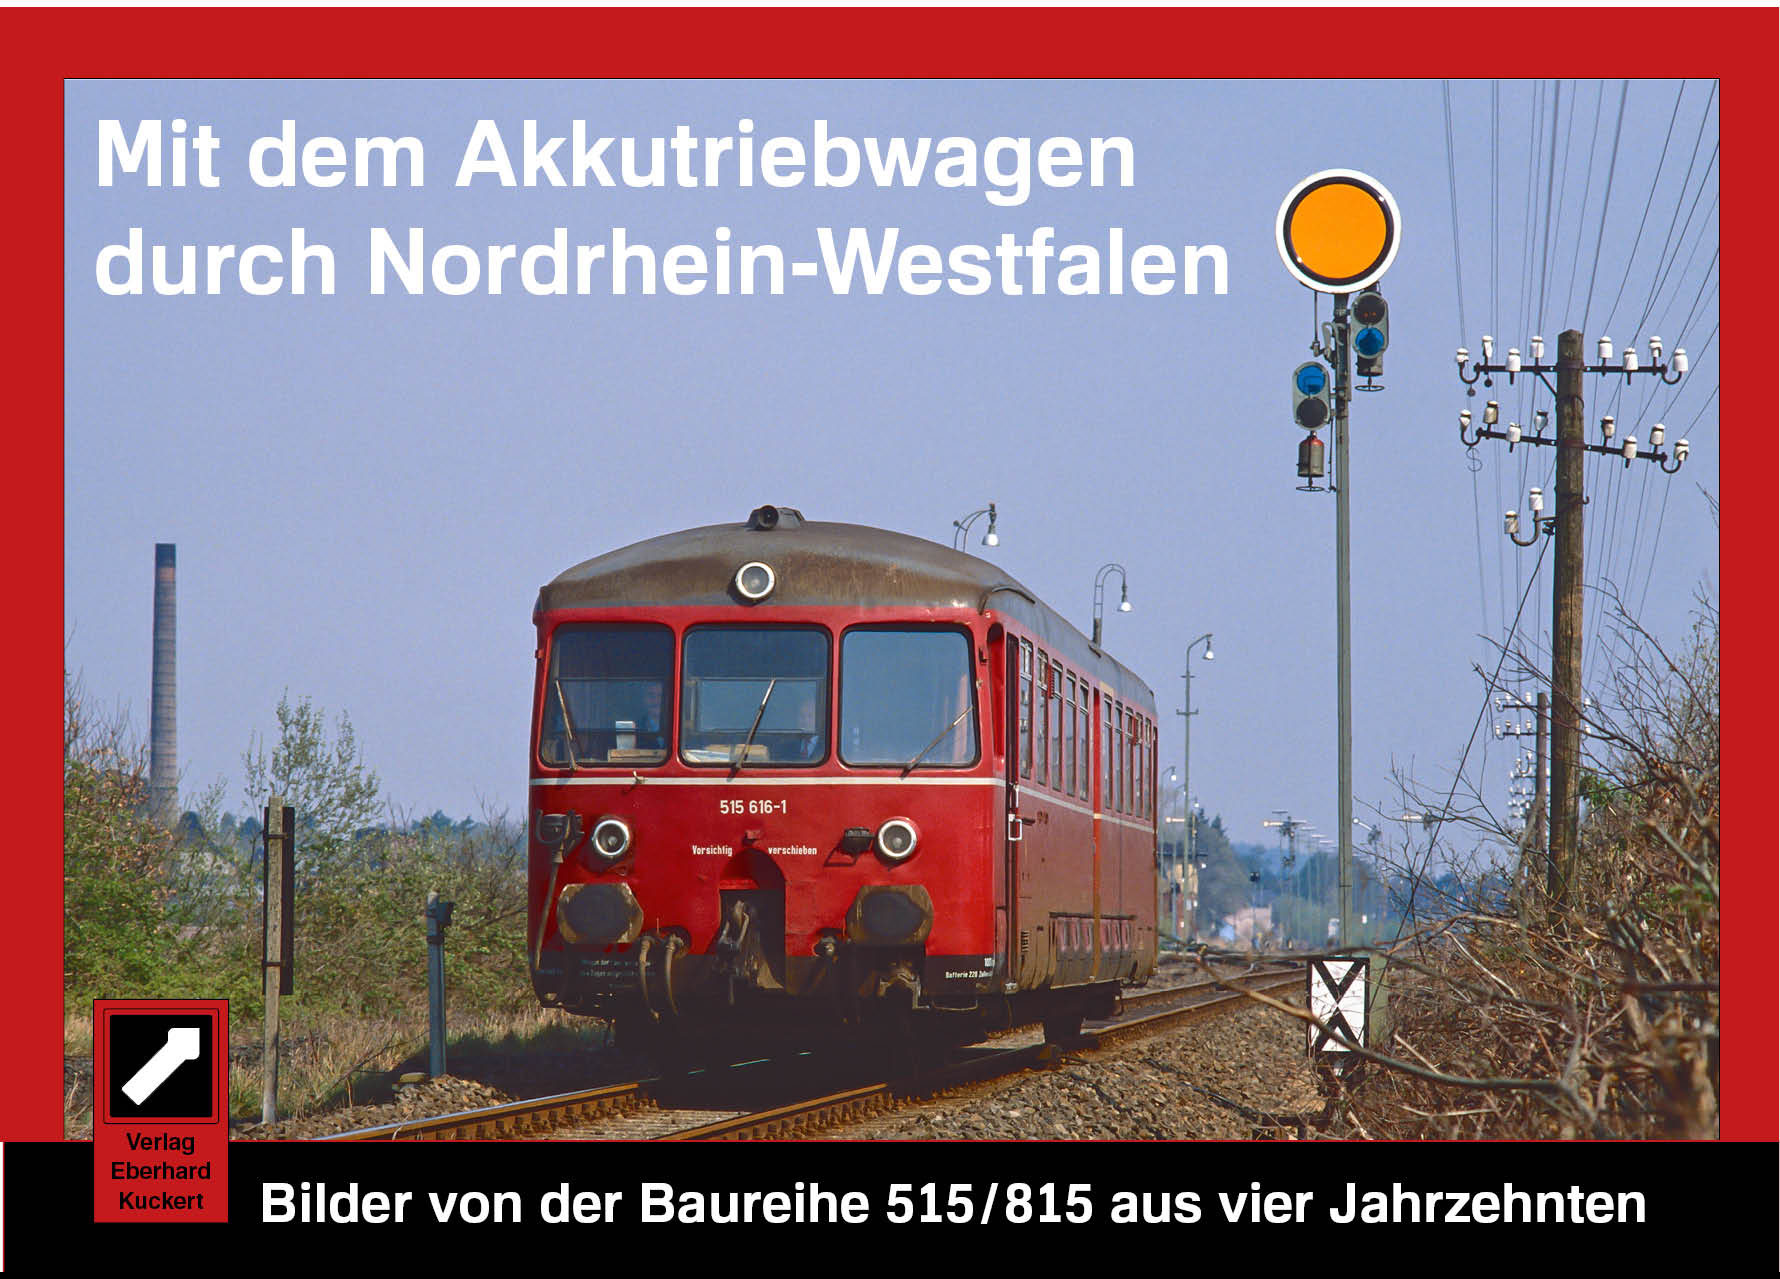 Mit dem Akkutriebwagen durch Nordrhein-Westfalen. Bilder von der Baureihe 515/815 aus vier Jahrzehnten